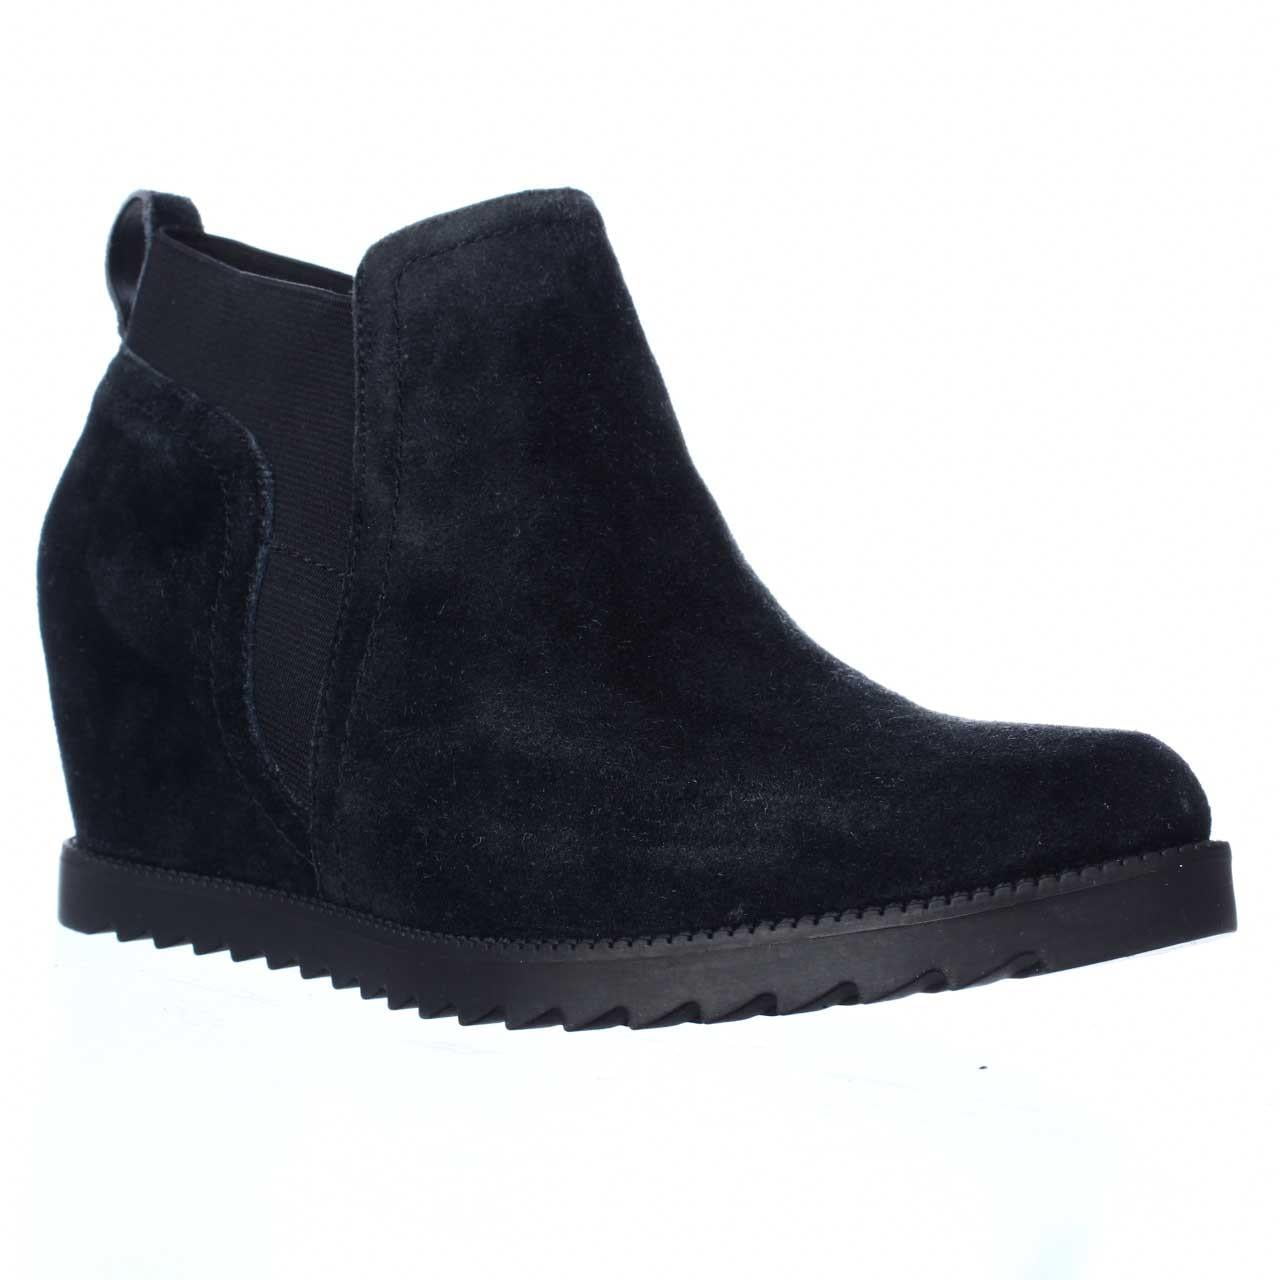 comfort booties black